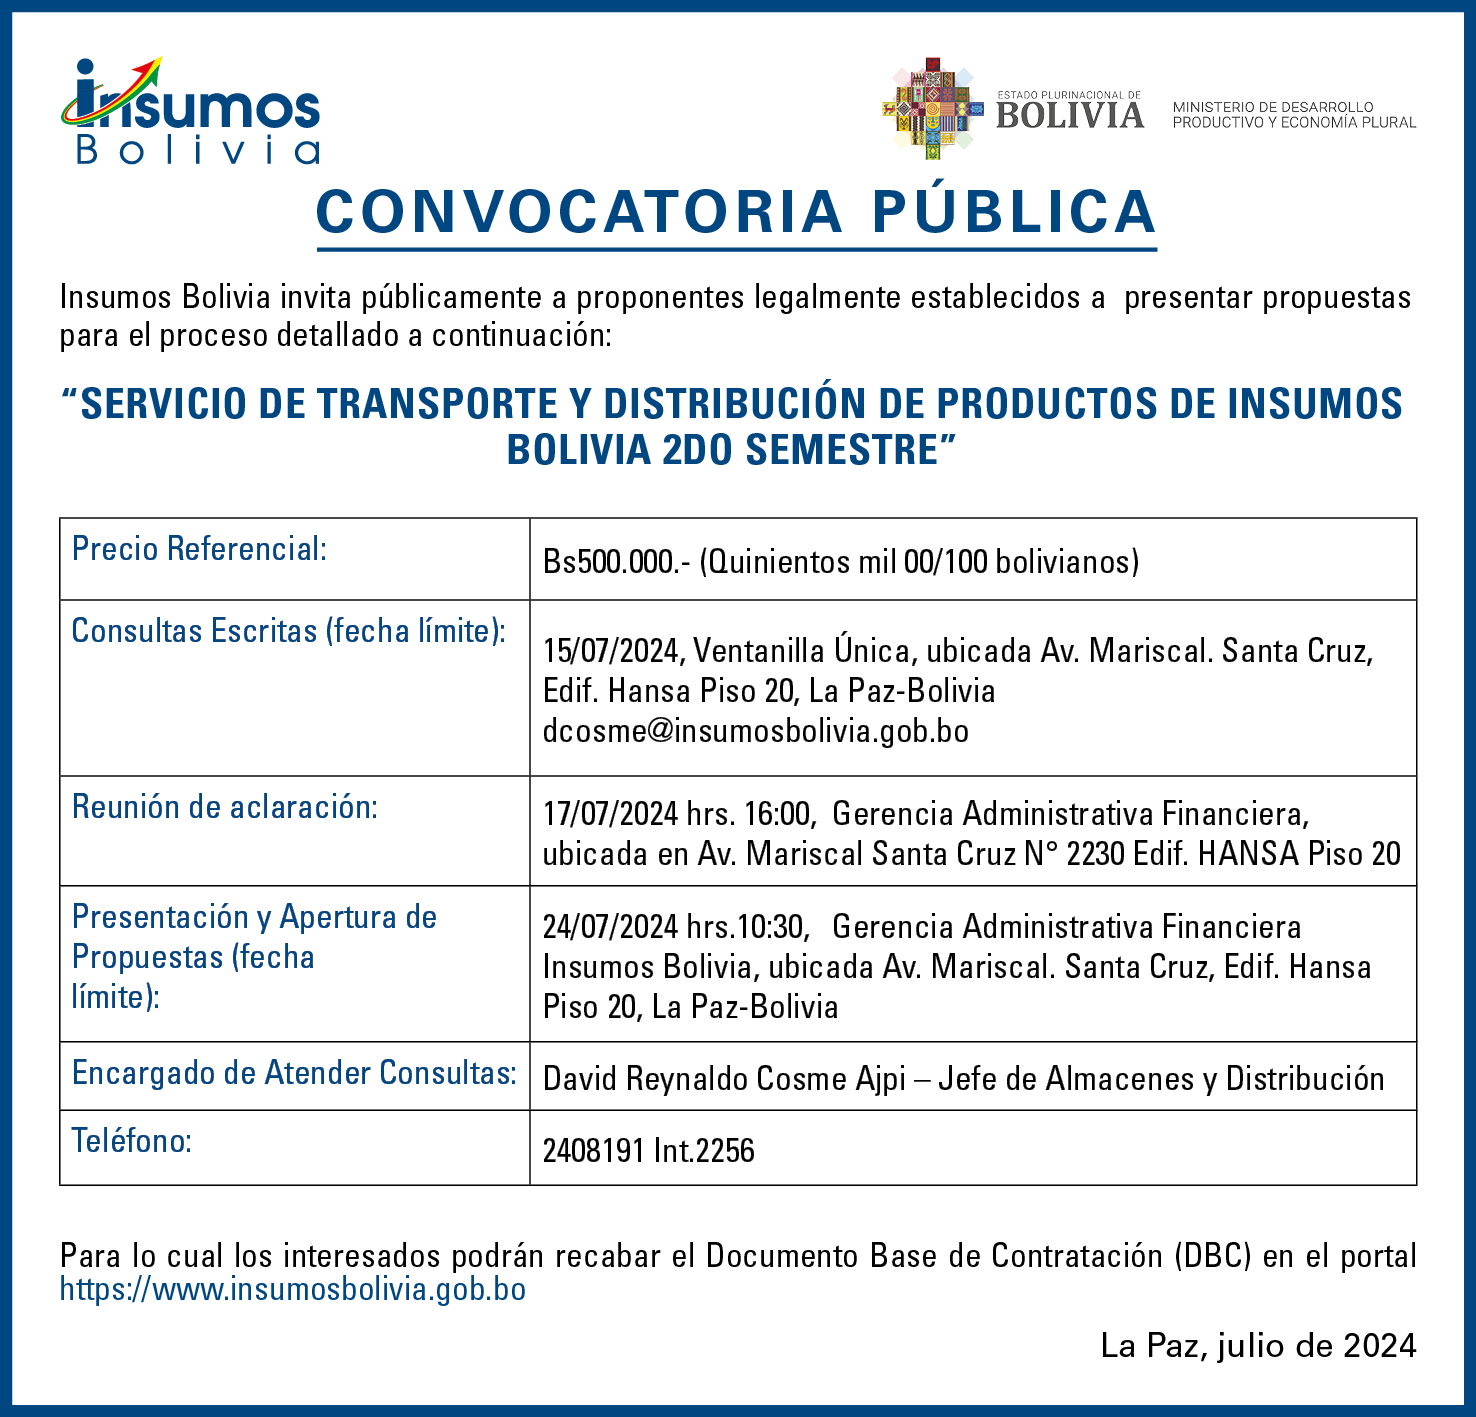 SERVICIO DE TRANSPORTE Y DISTRIBUCIÓN DE PRODUCTOS DE INSUMOS BOLIVIA 2DO SEMESTRE web1